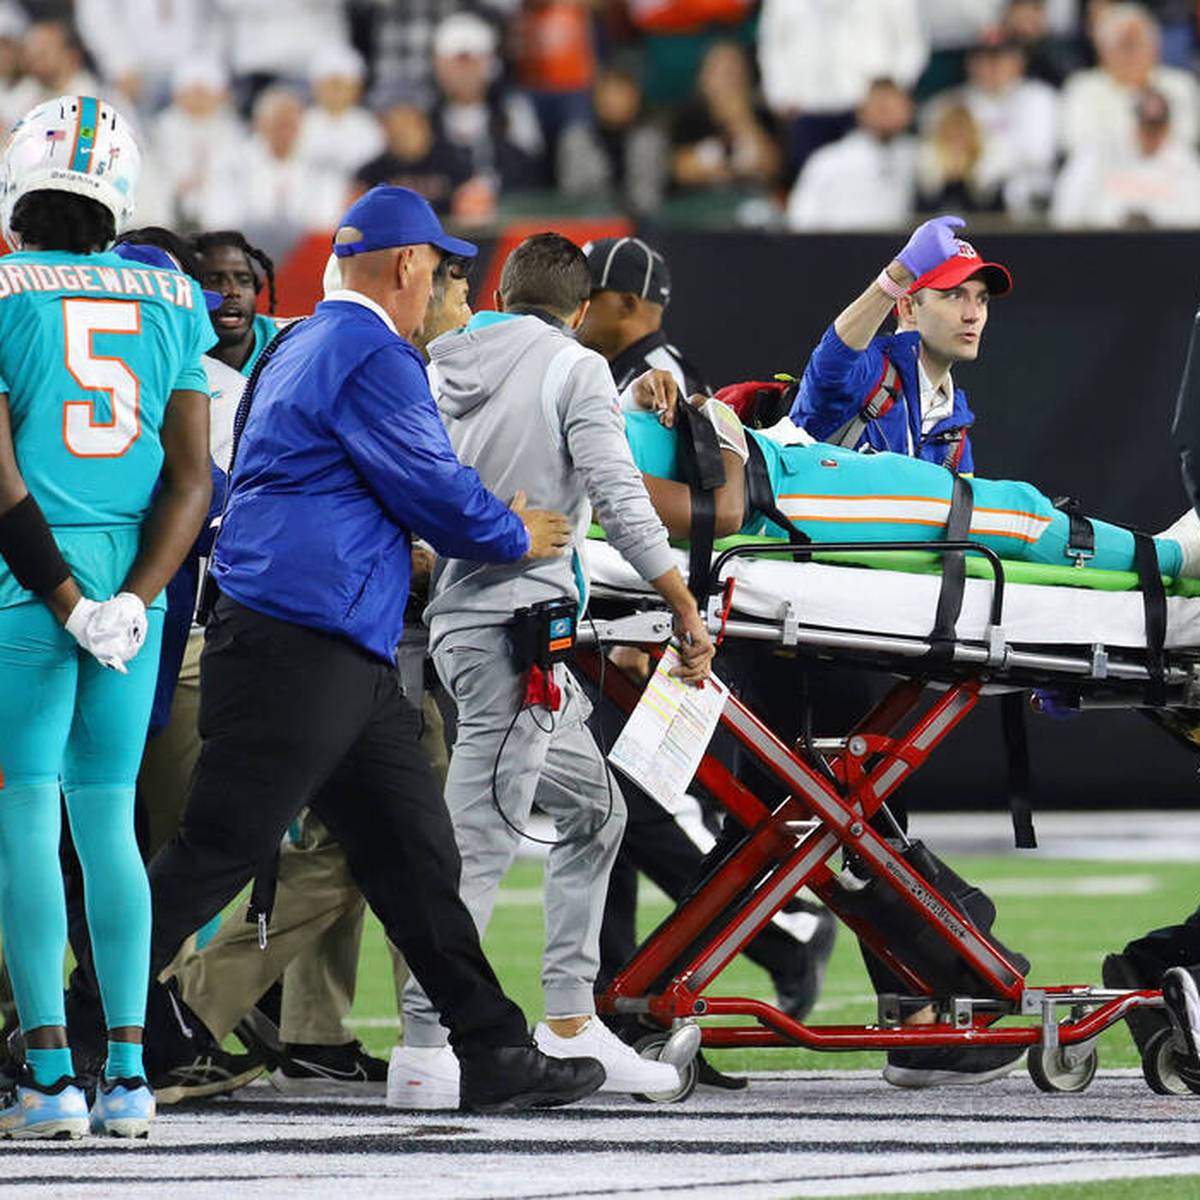 Eine beängstigende Verletzung von Miami-Quarterback Tua Tagovailoa überschattet das Thursday Night Game der NFL. Weil die Vorgeschichte Fragen aufwirft, ermittelt nun die Spielergewerkschaft.